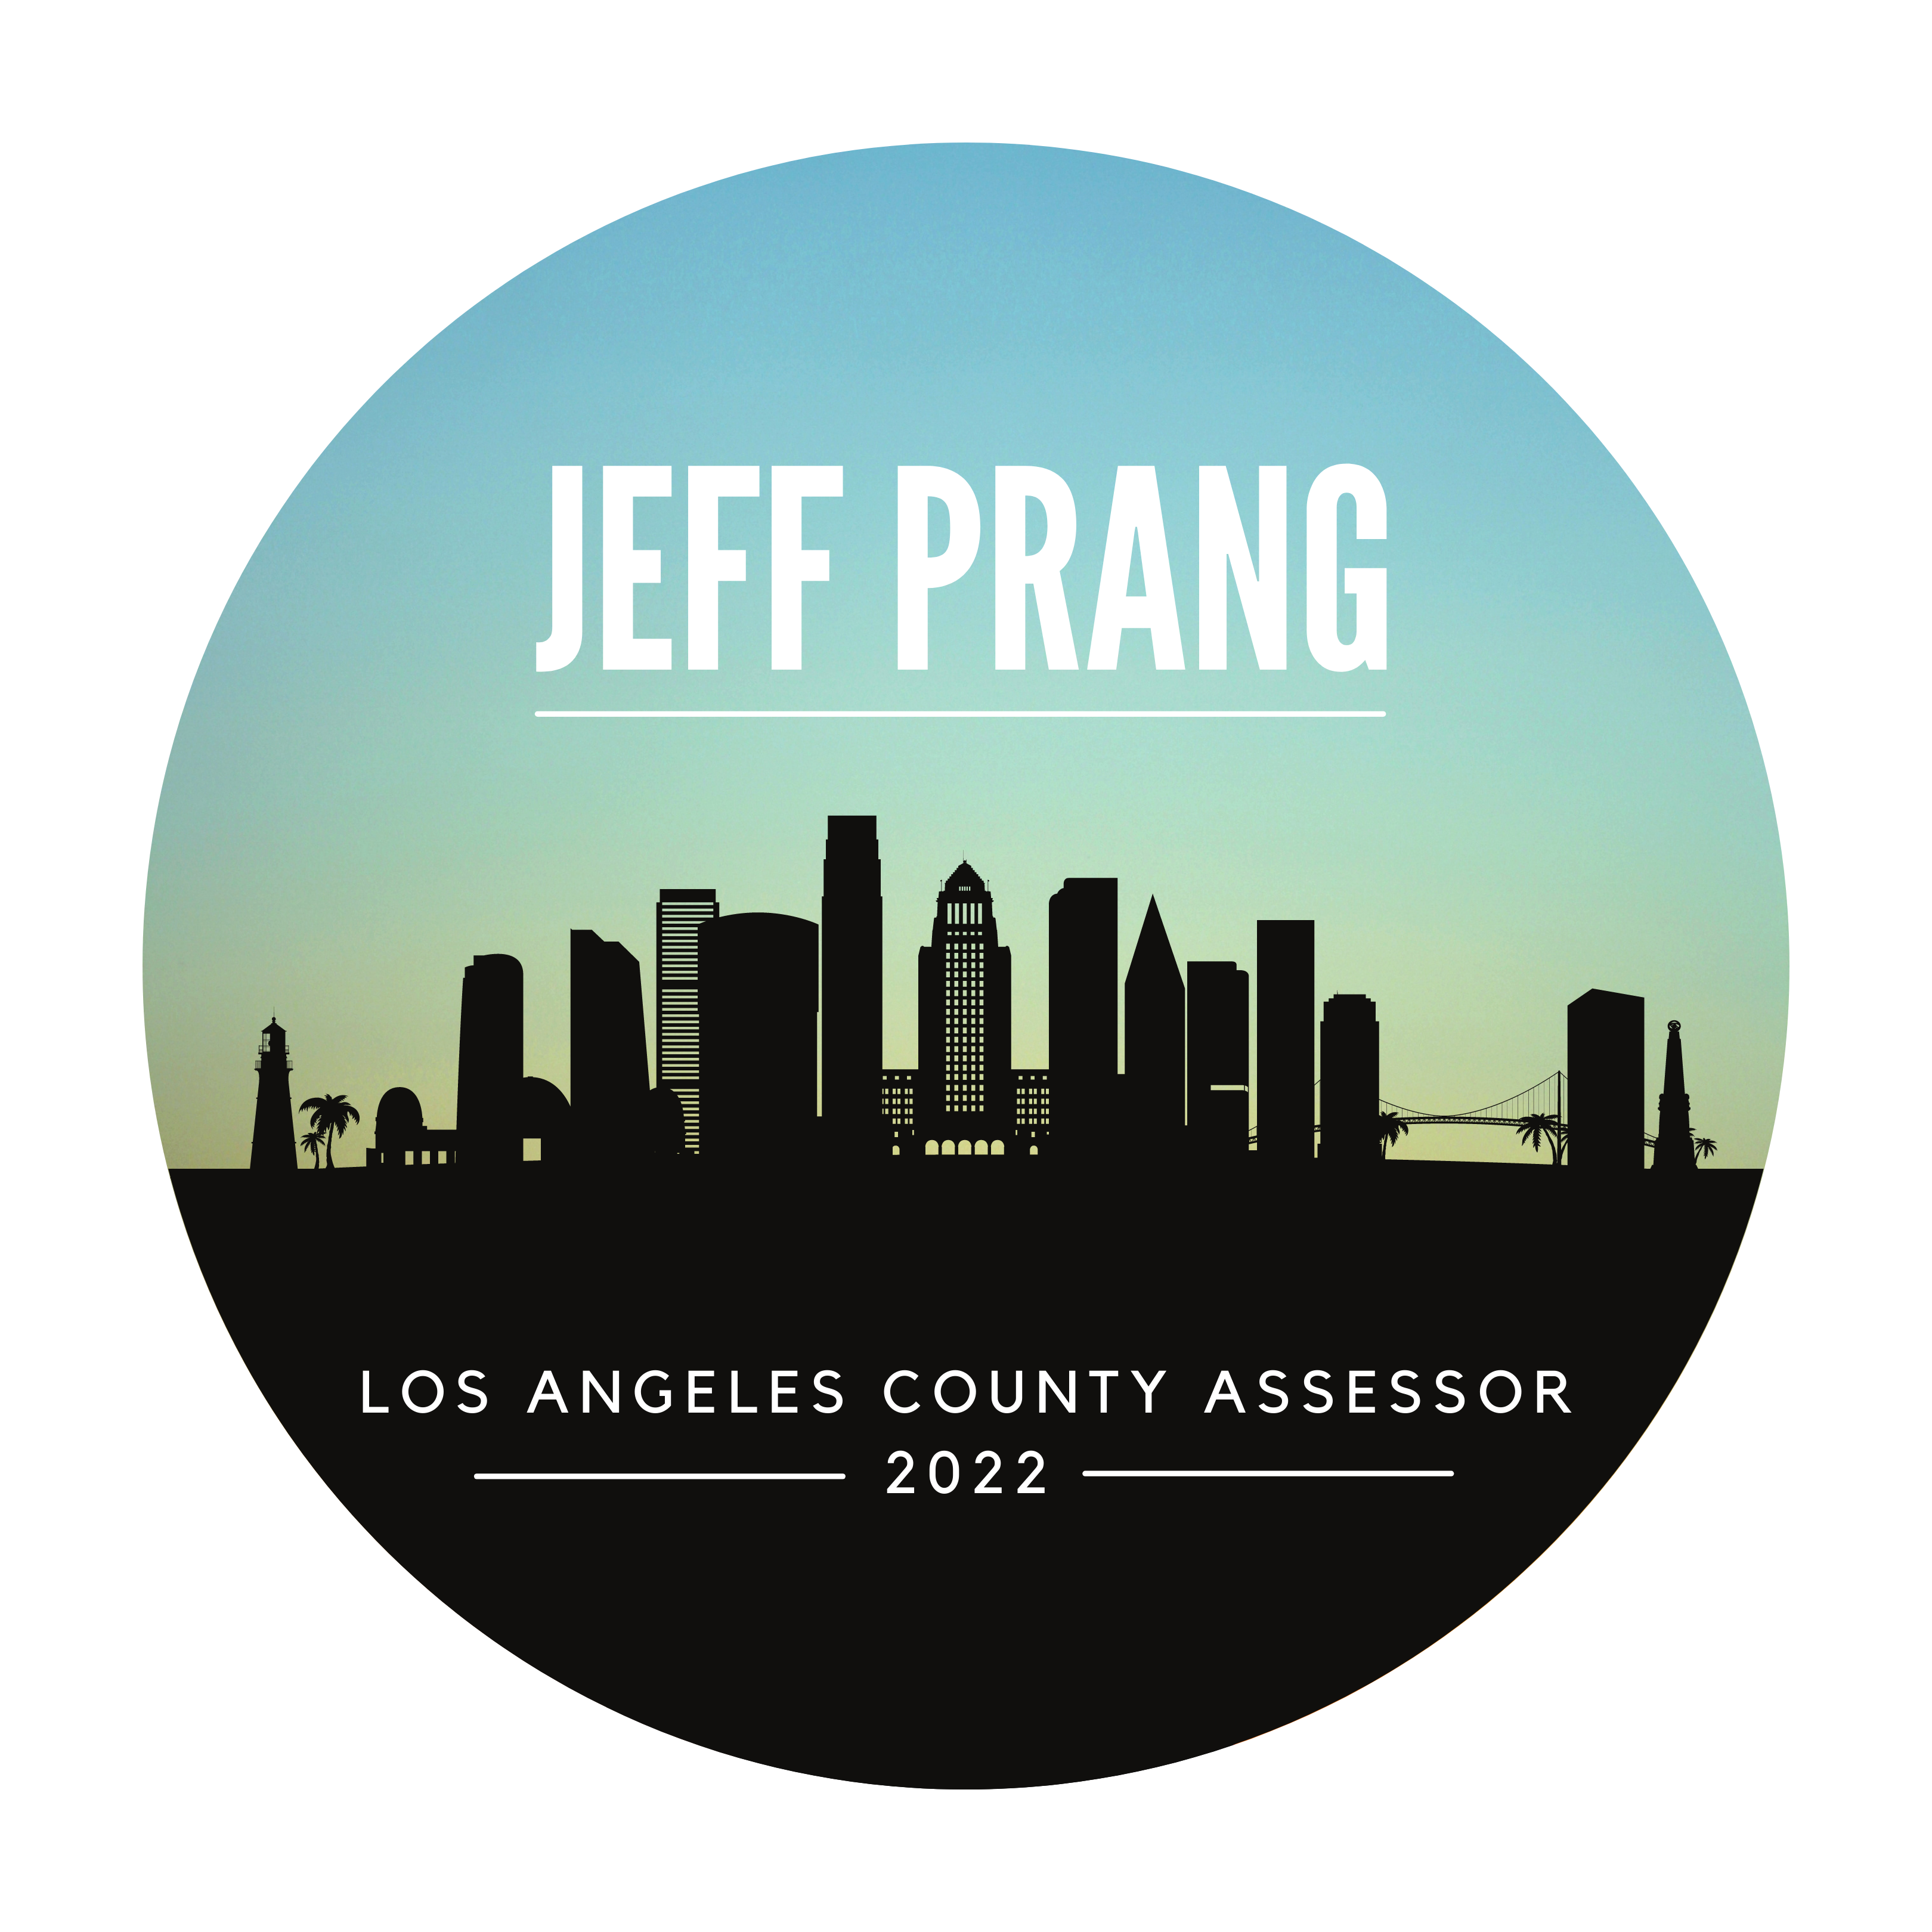 Jeff Prang